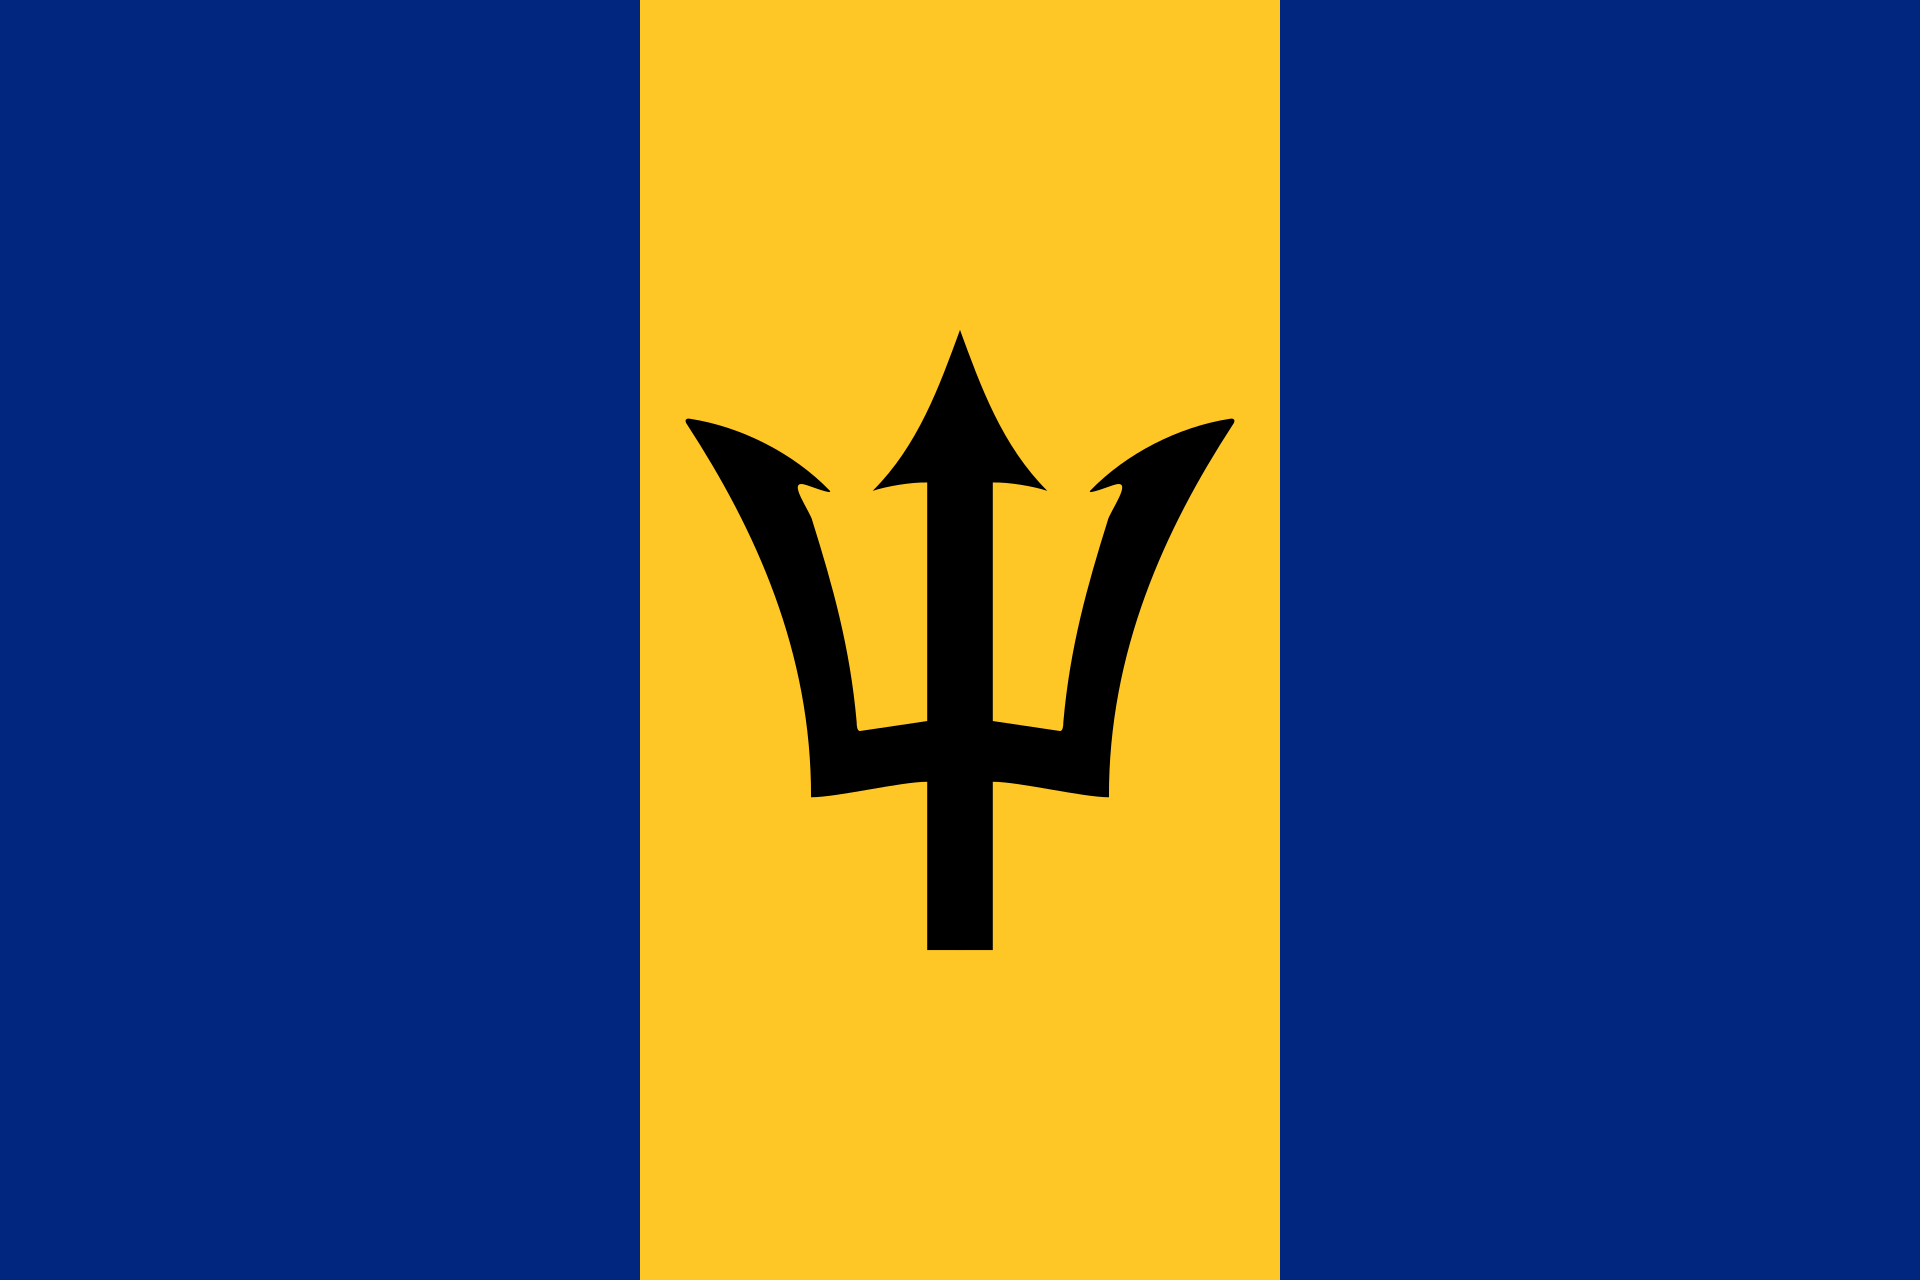 Barbados (BAR)